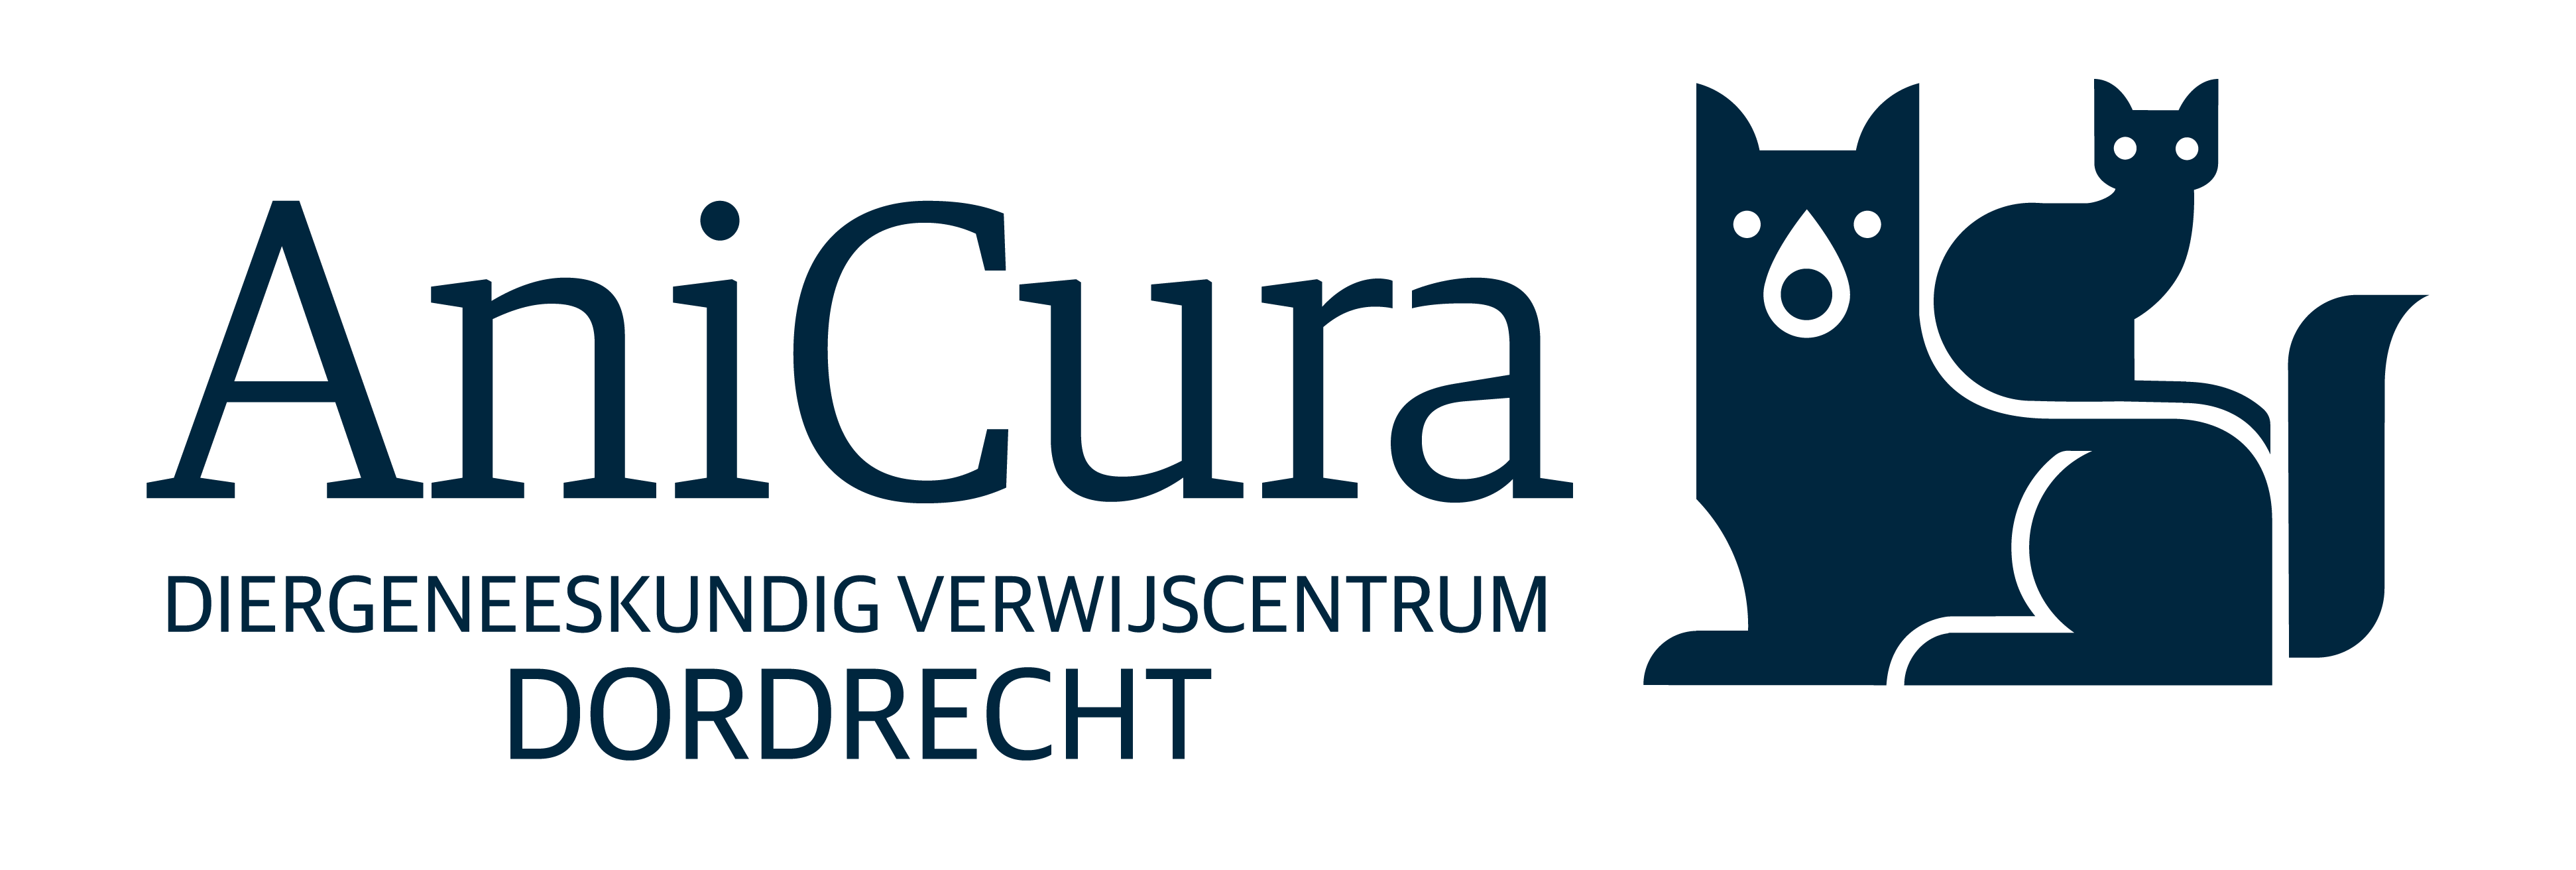 Diergeneeskundig Verwijscentrum Dordrecht logo